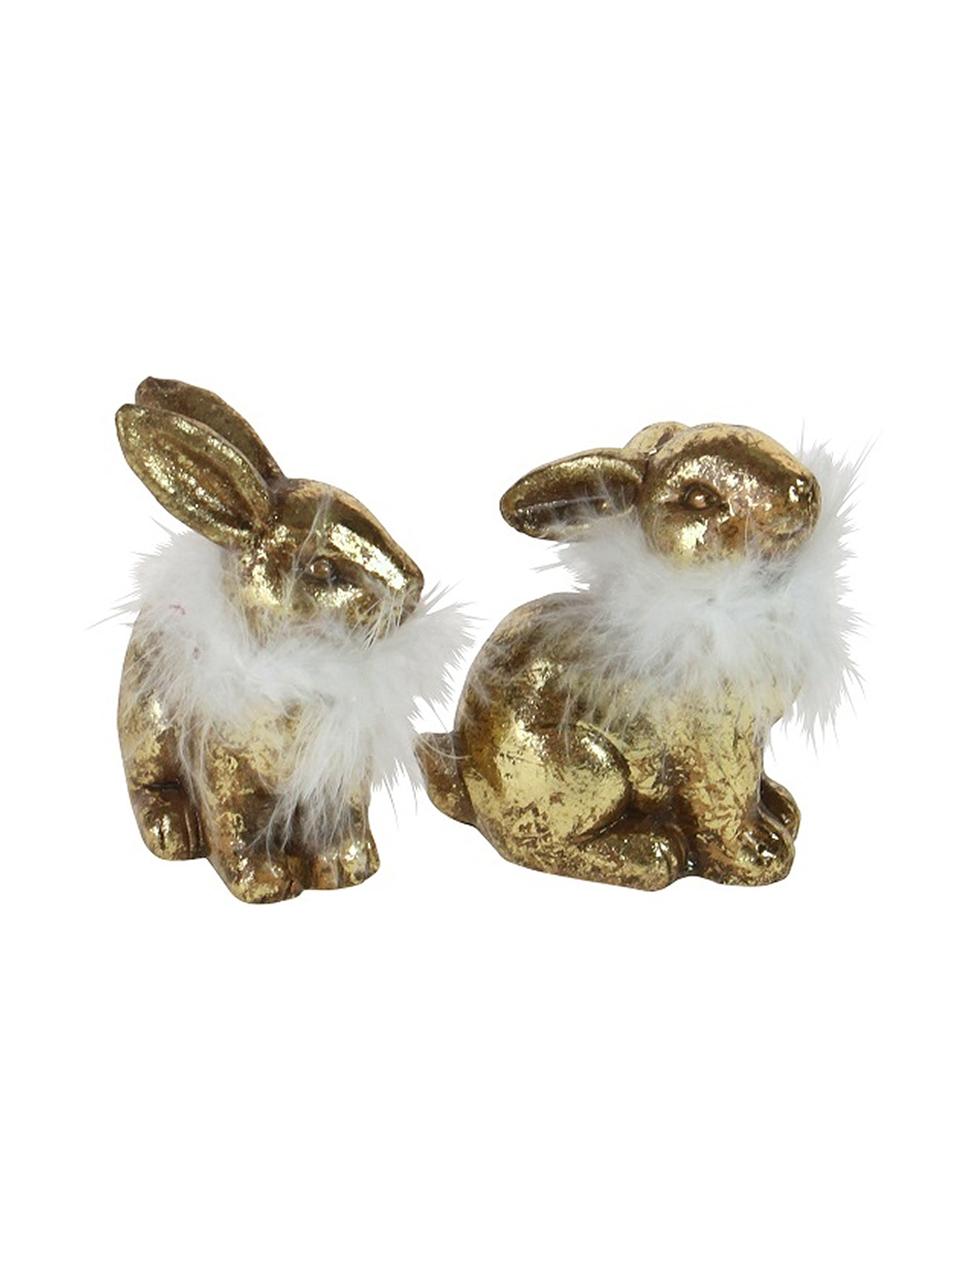 Deco konijnenset Tini in goud  glanzend, 2-delig., Goudkleurig, wit, Set met verschillende formaten